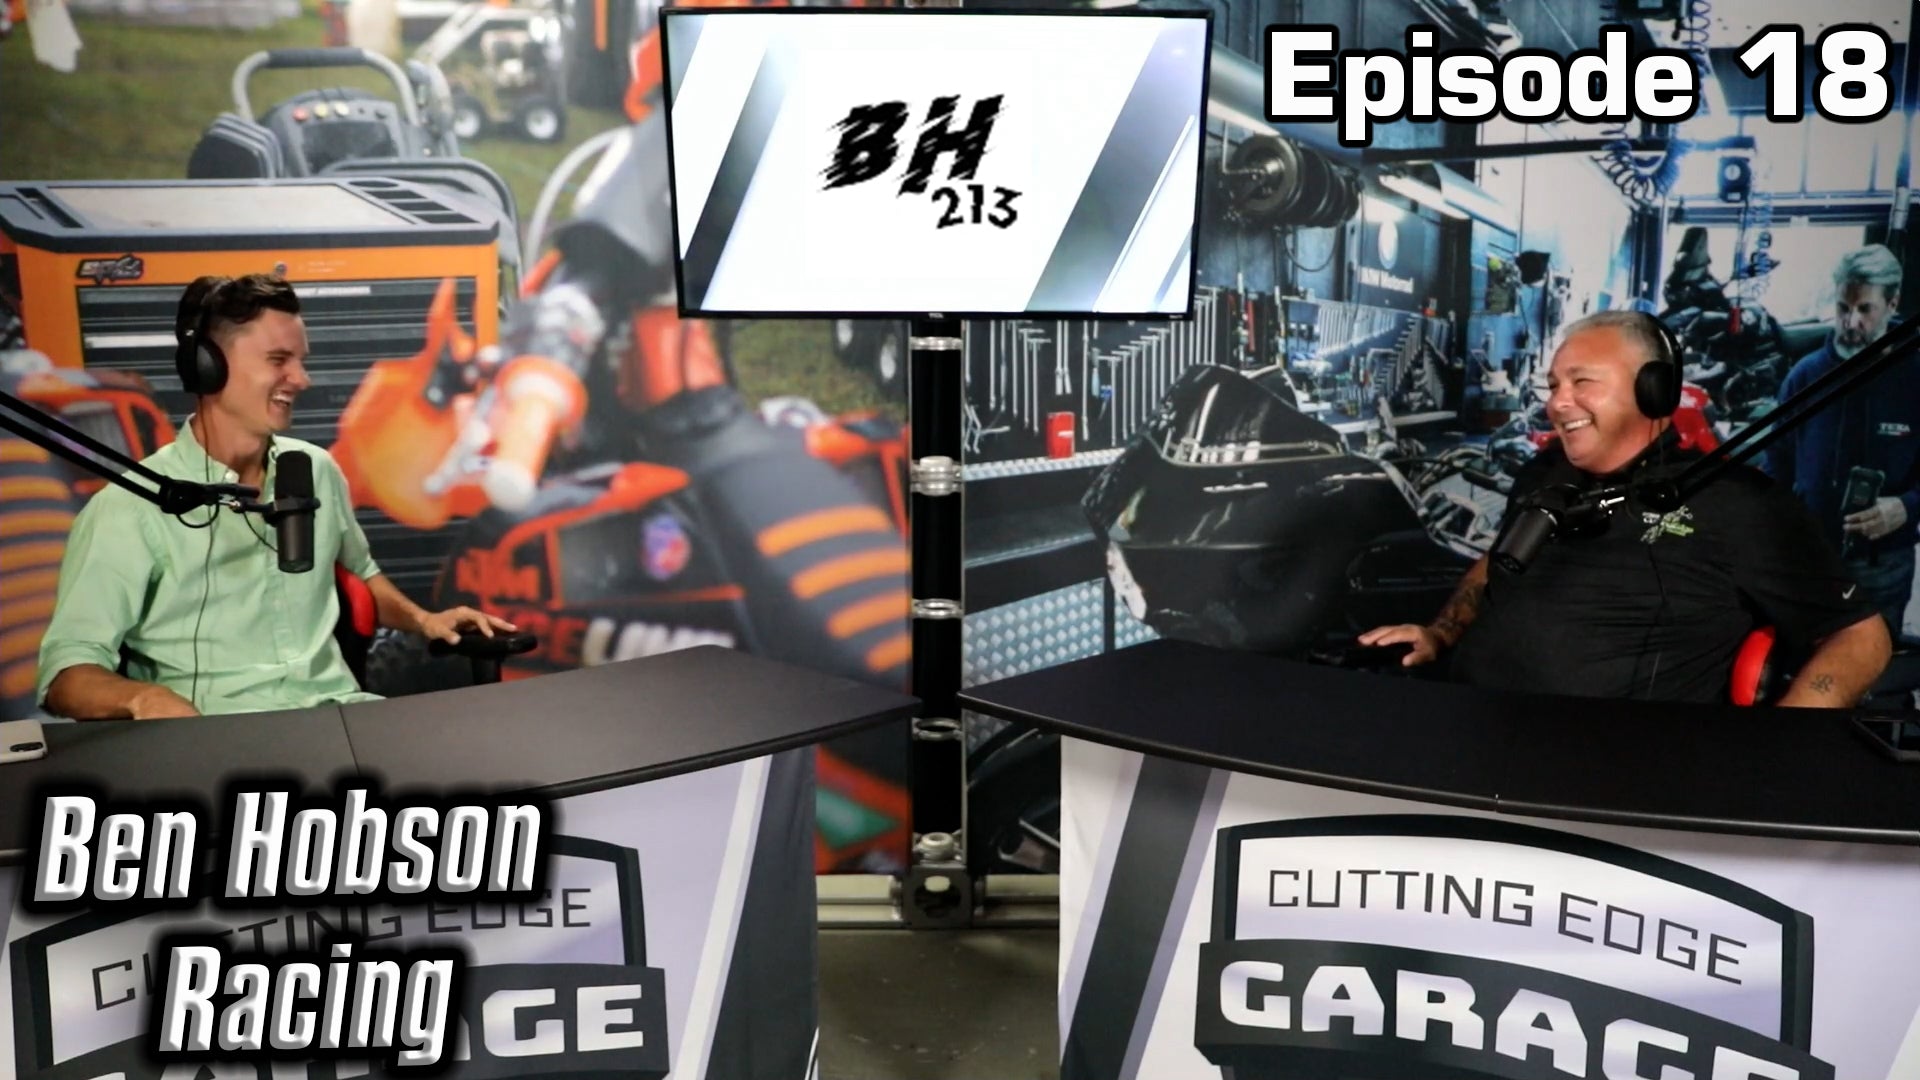 Cutting Edge Garage - Episode 18